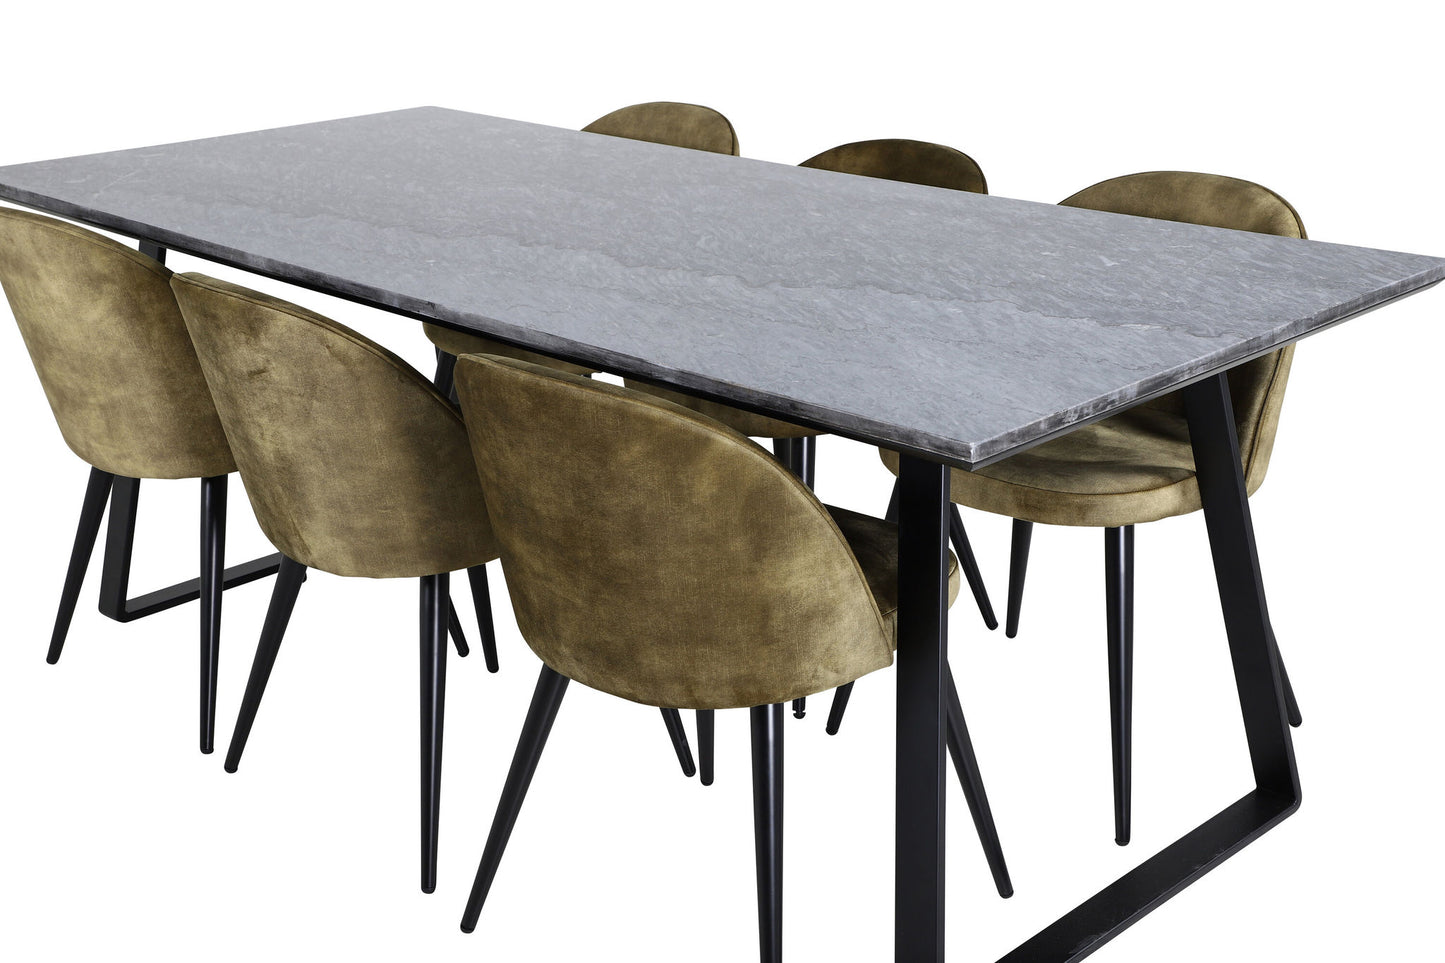 Estelle - Spisebord, 200*90*H76 - Sort+ velour stol - Sorte ben - Dusty Grøn velour